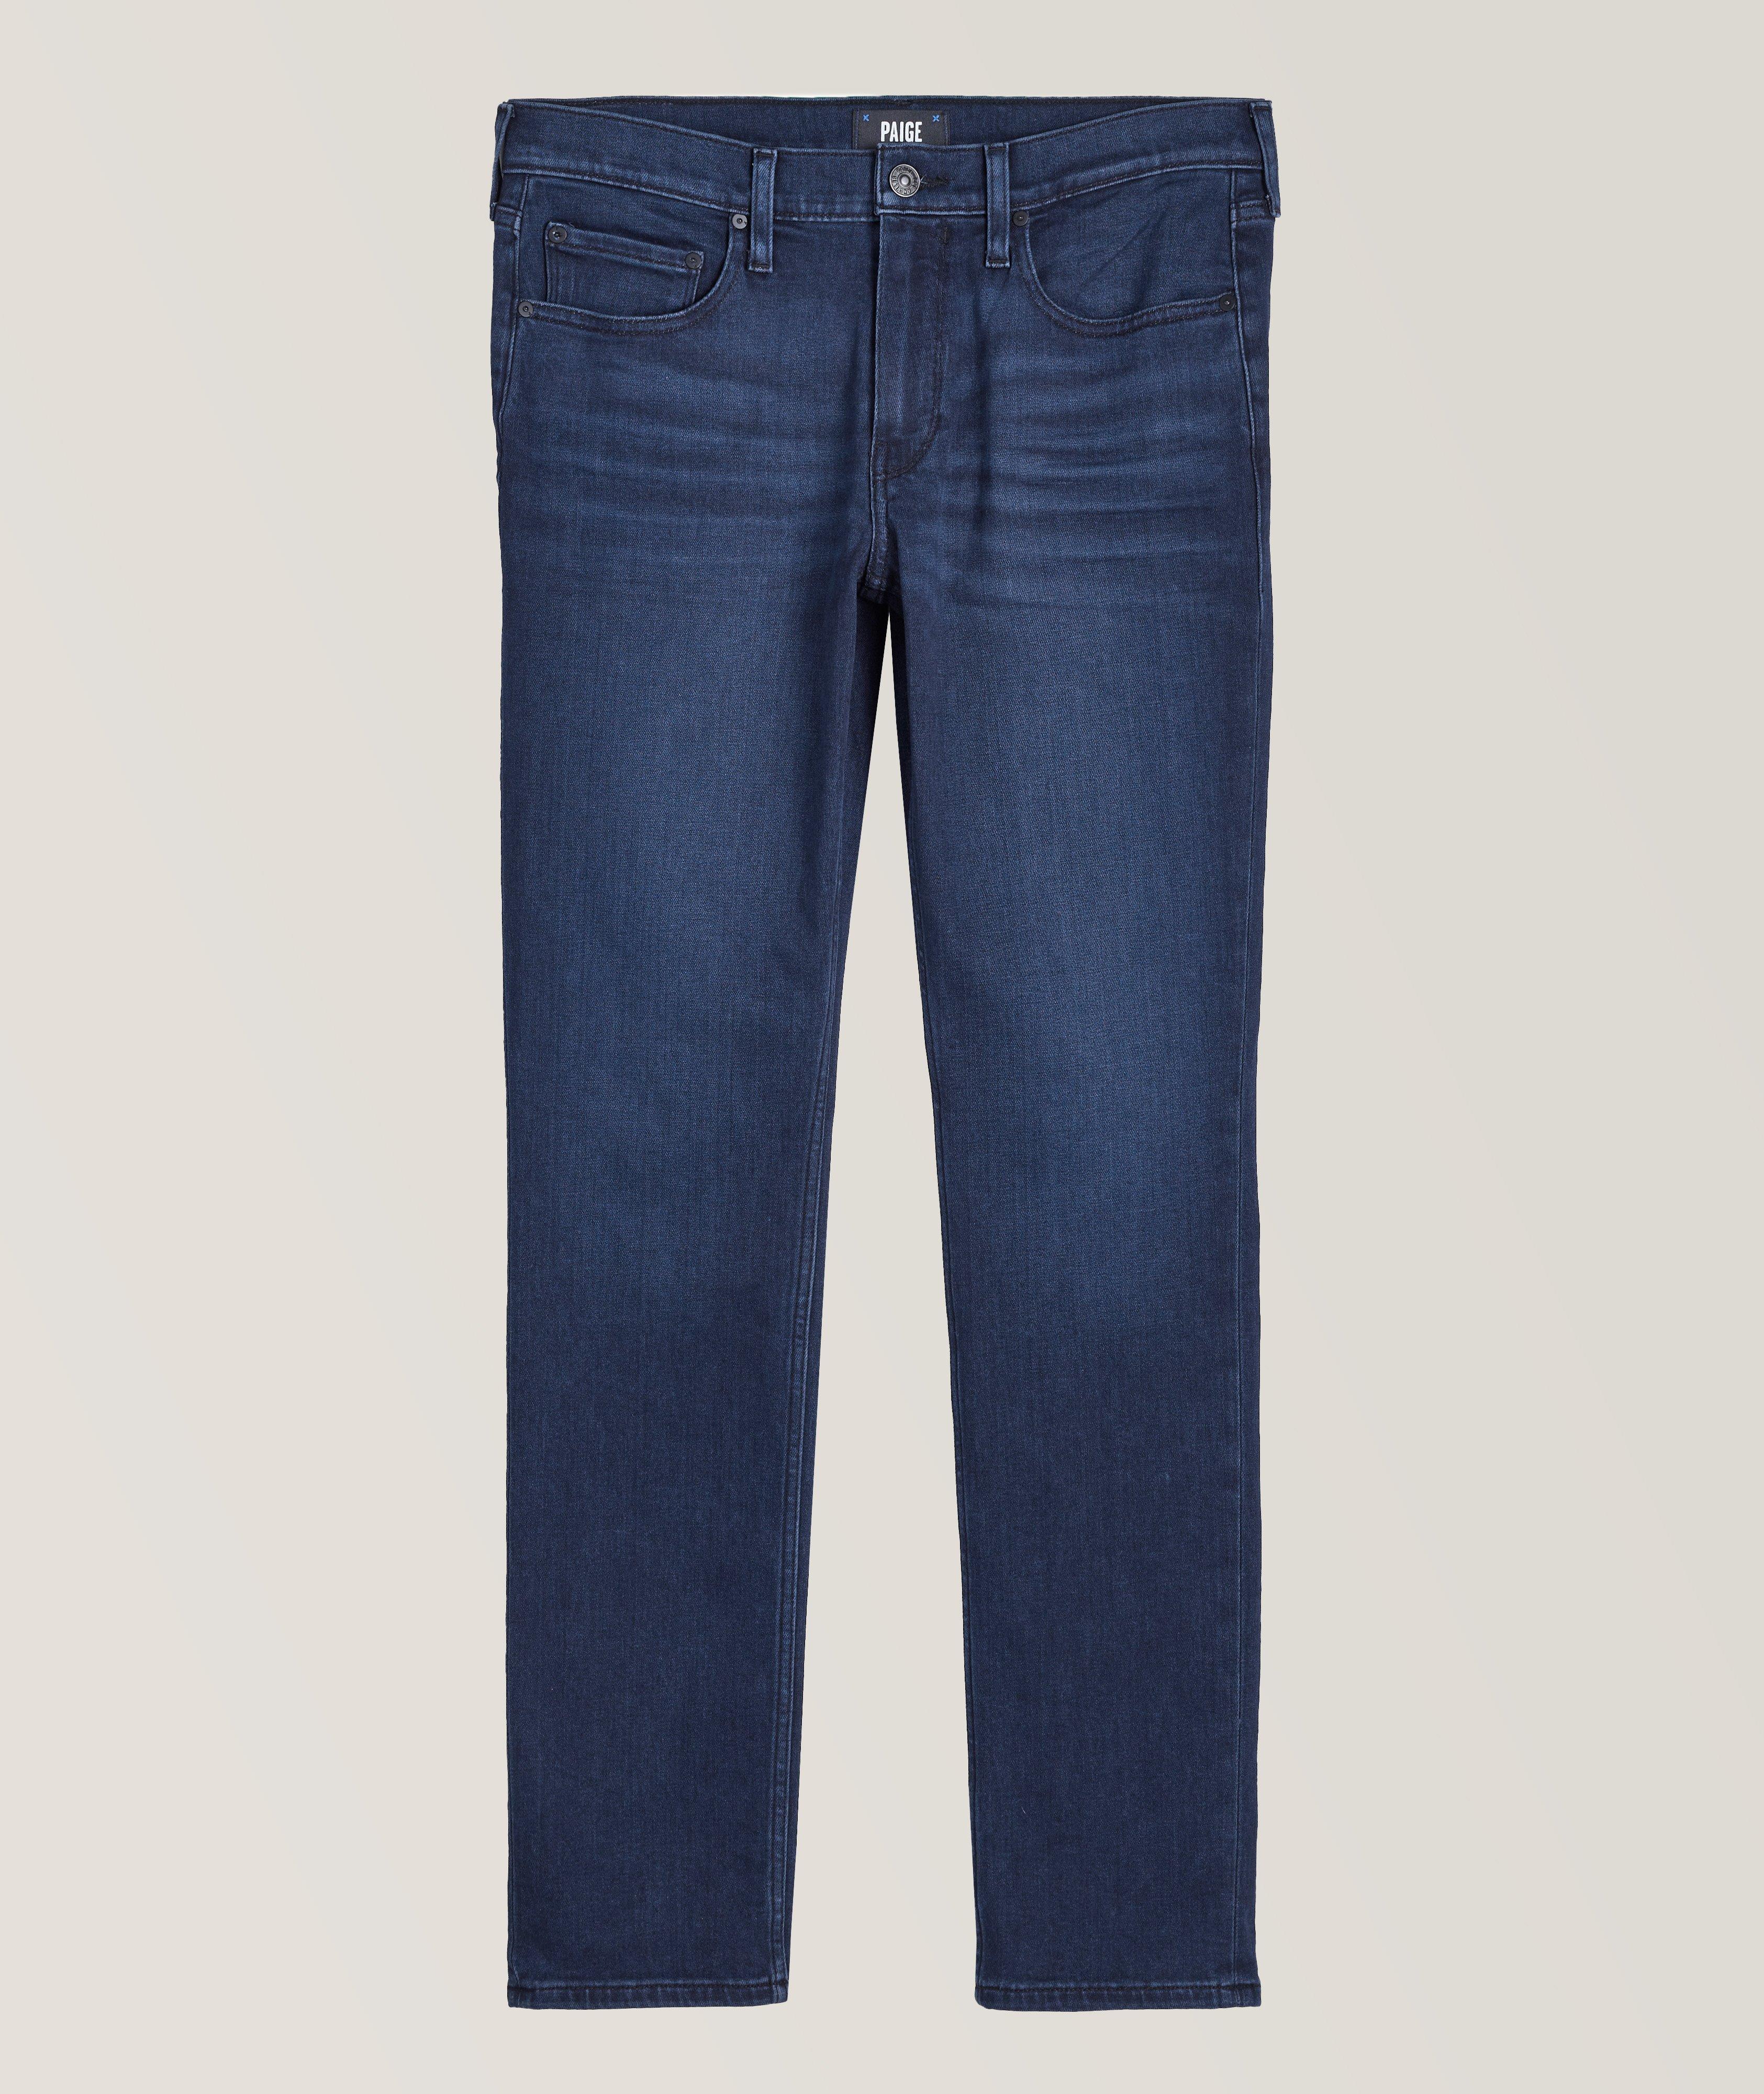 Lennox Slim-Fit Transcend Vintage Jeans